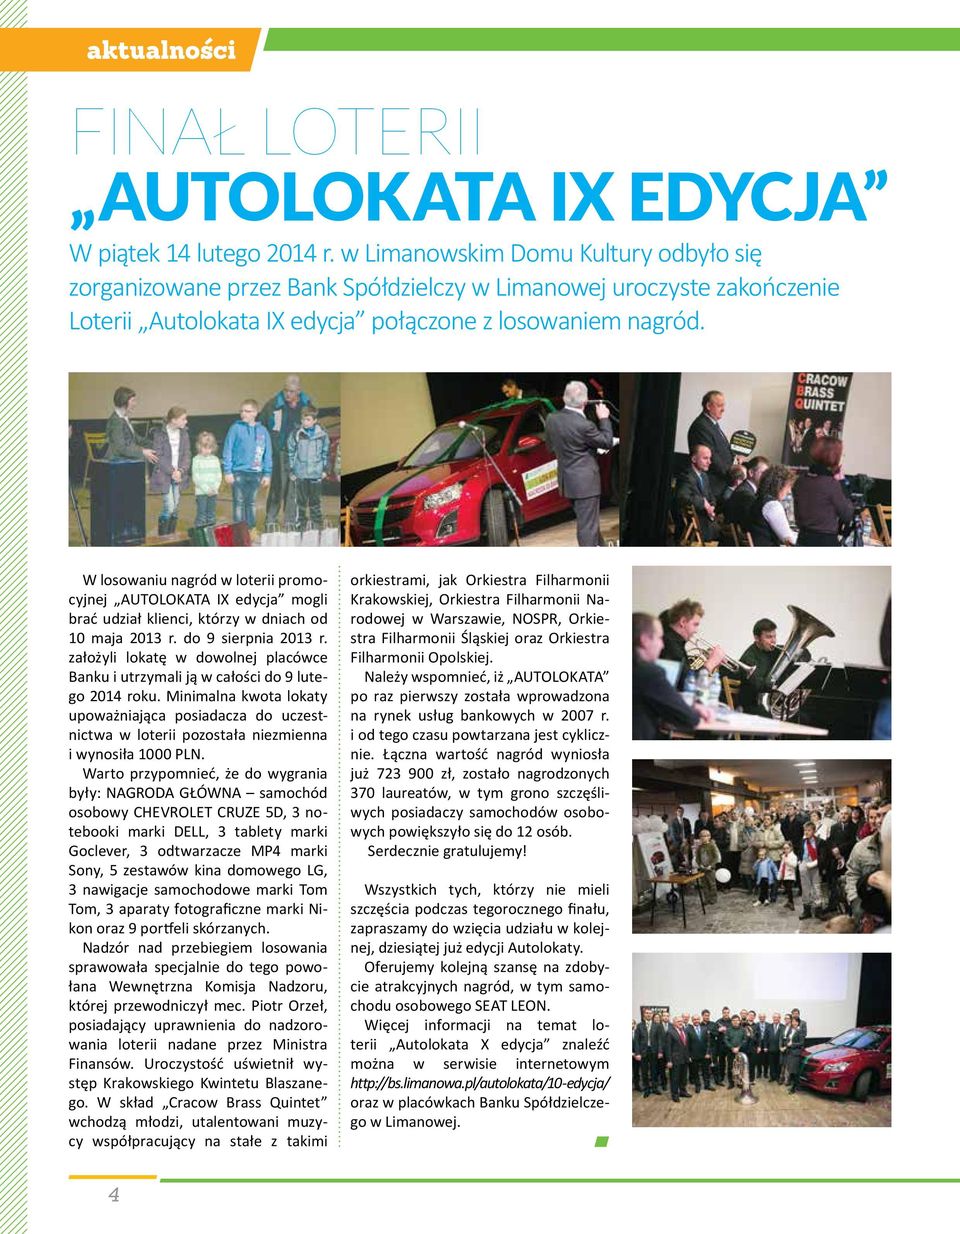 W losowaniu nagród w loterii promocyjnej AUTOLOKATA IX edycja mogli brać udział klienci, którzy w dniach od 10 maja 2013 r. do 9 sierpnia 2013 r.